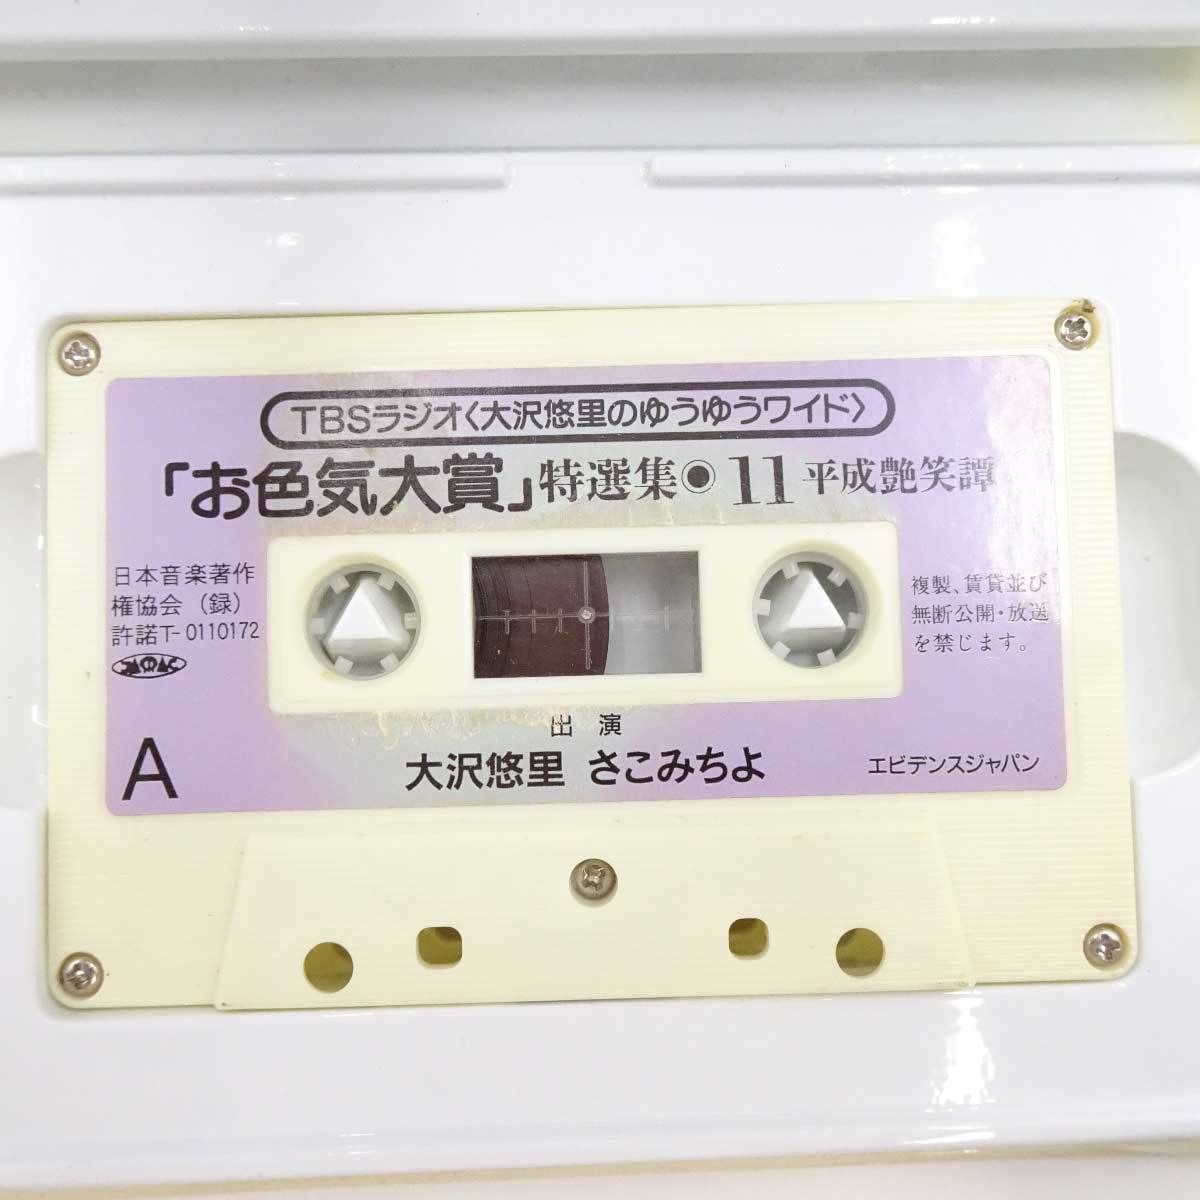 【中古】大沢悠里のゆうゆうワイド 「お色気大賞」 特選集11 カセットテープ_画像2